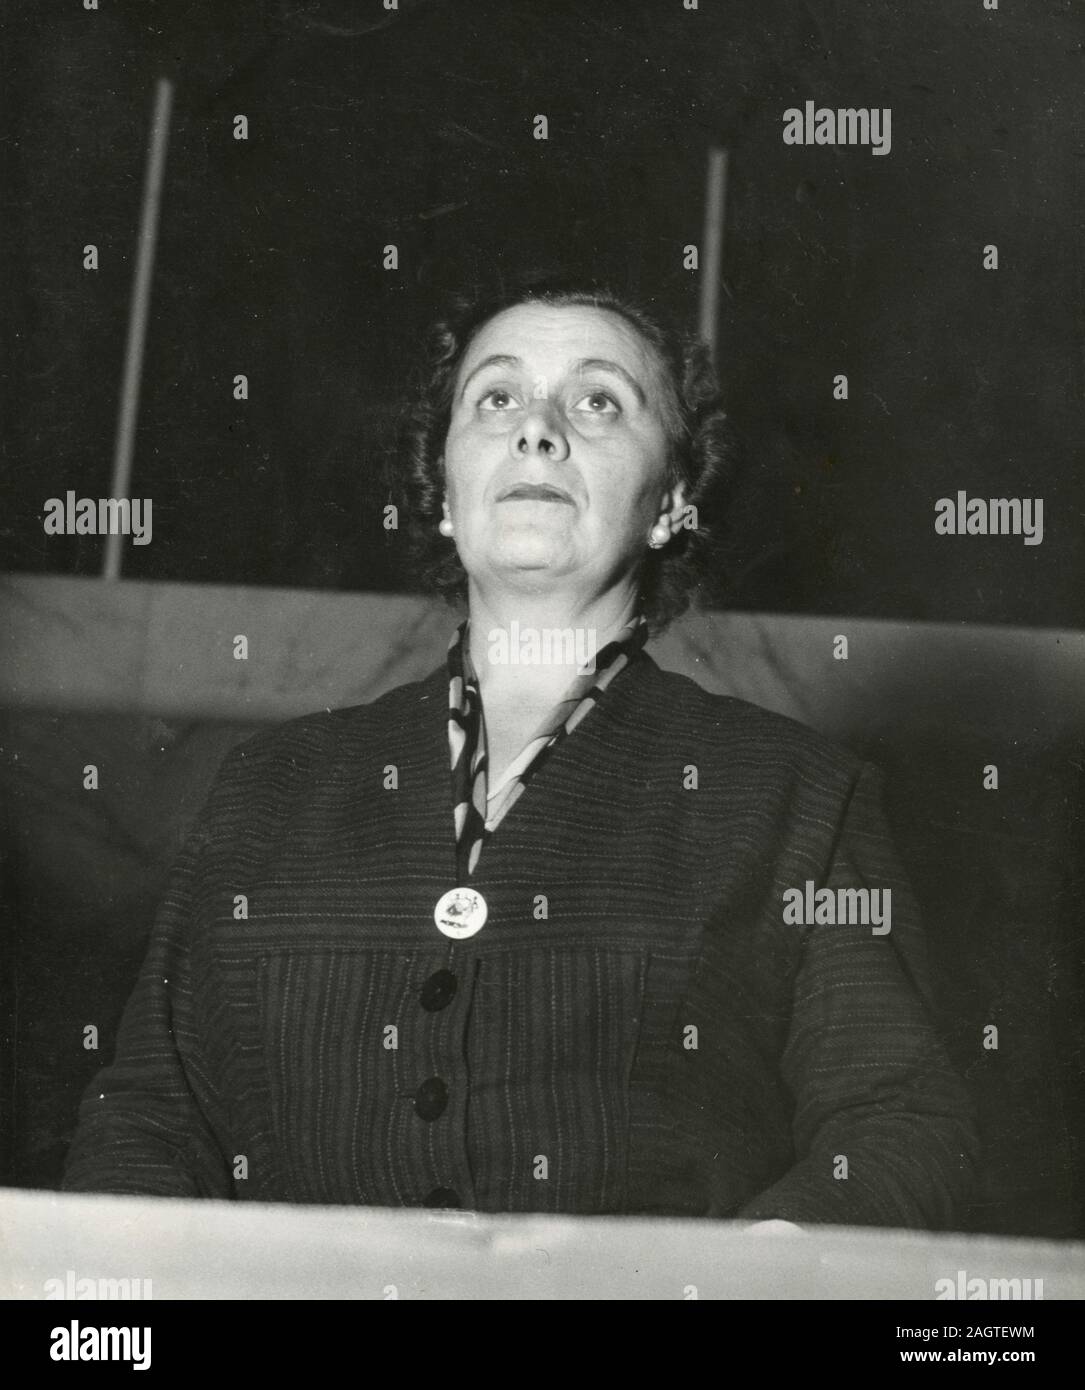 Unbekannte italienische Frau Politiker der PCI-kommunistischen Partei, 1960er Jahre Stockfoto